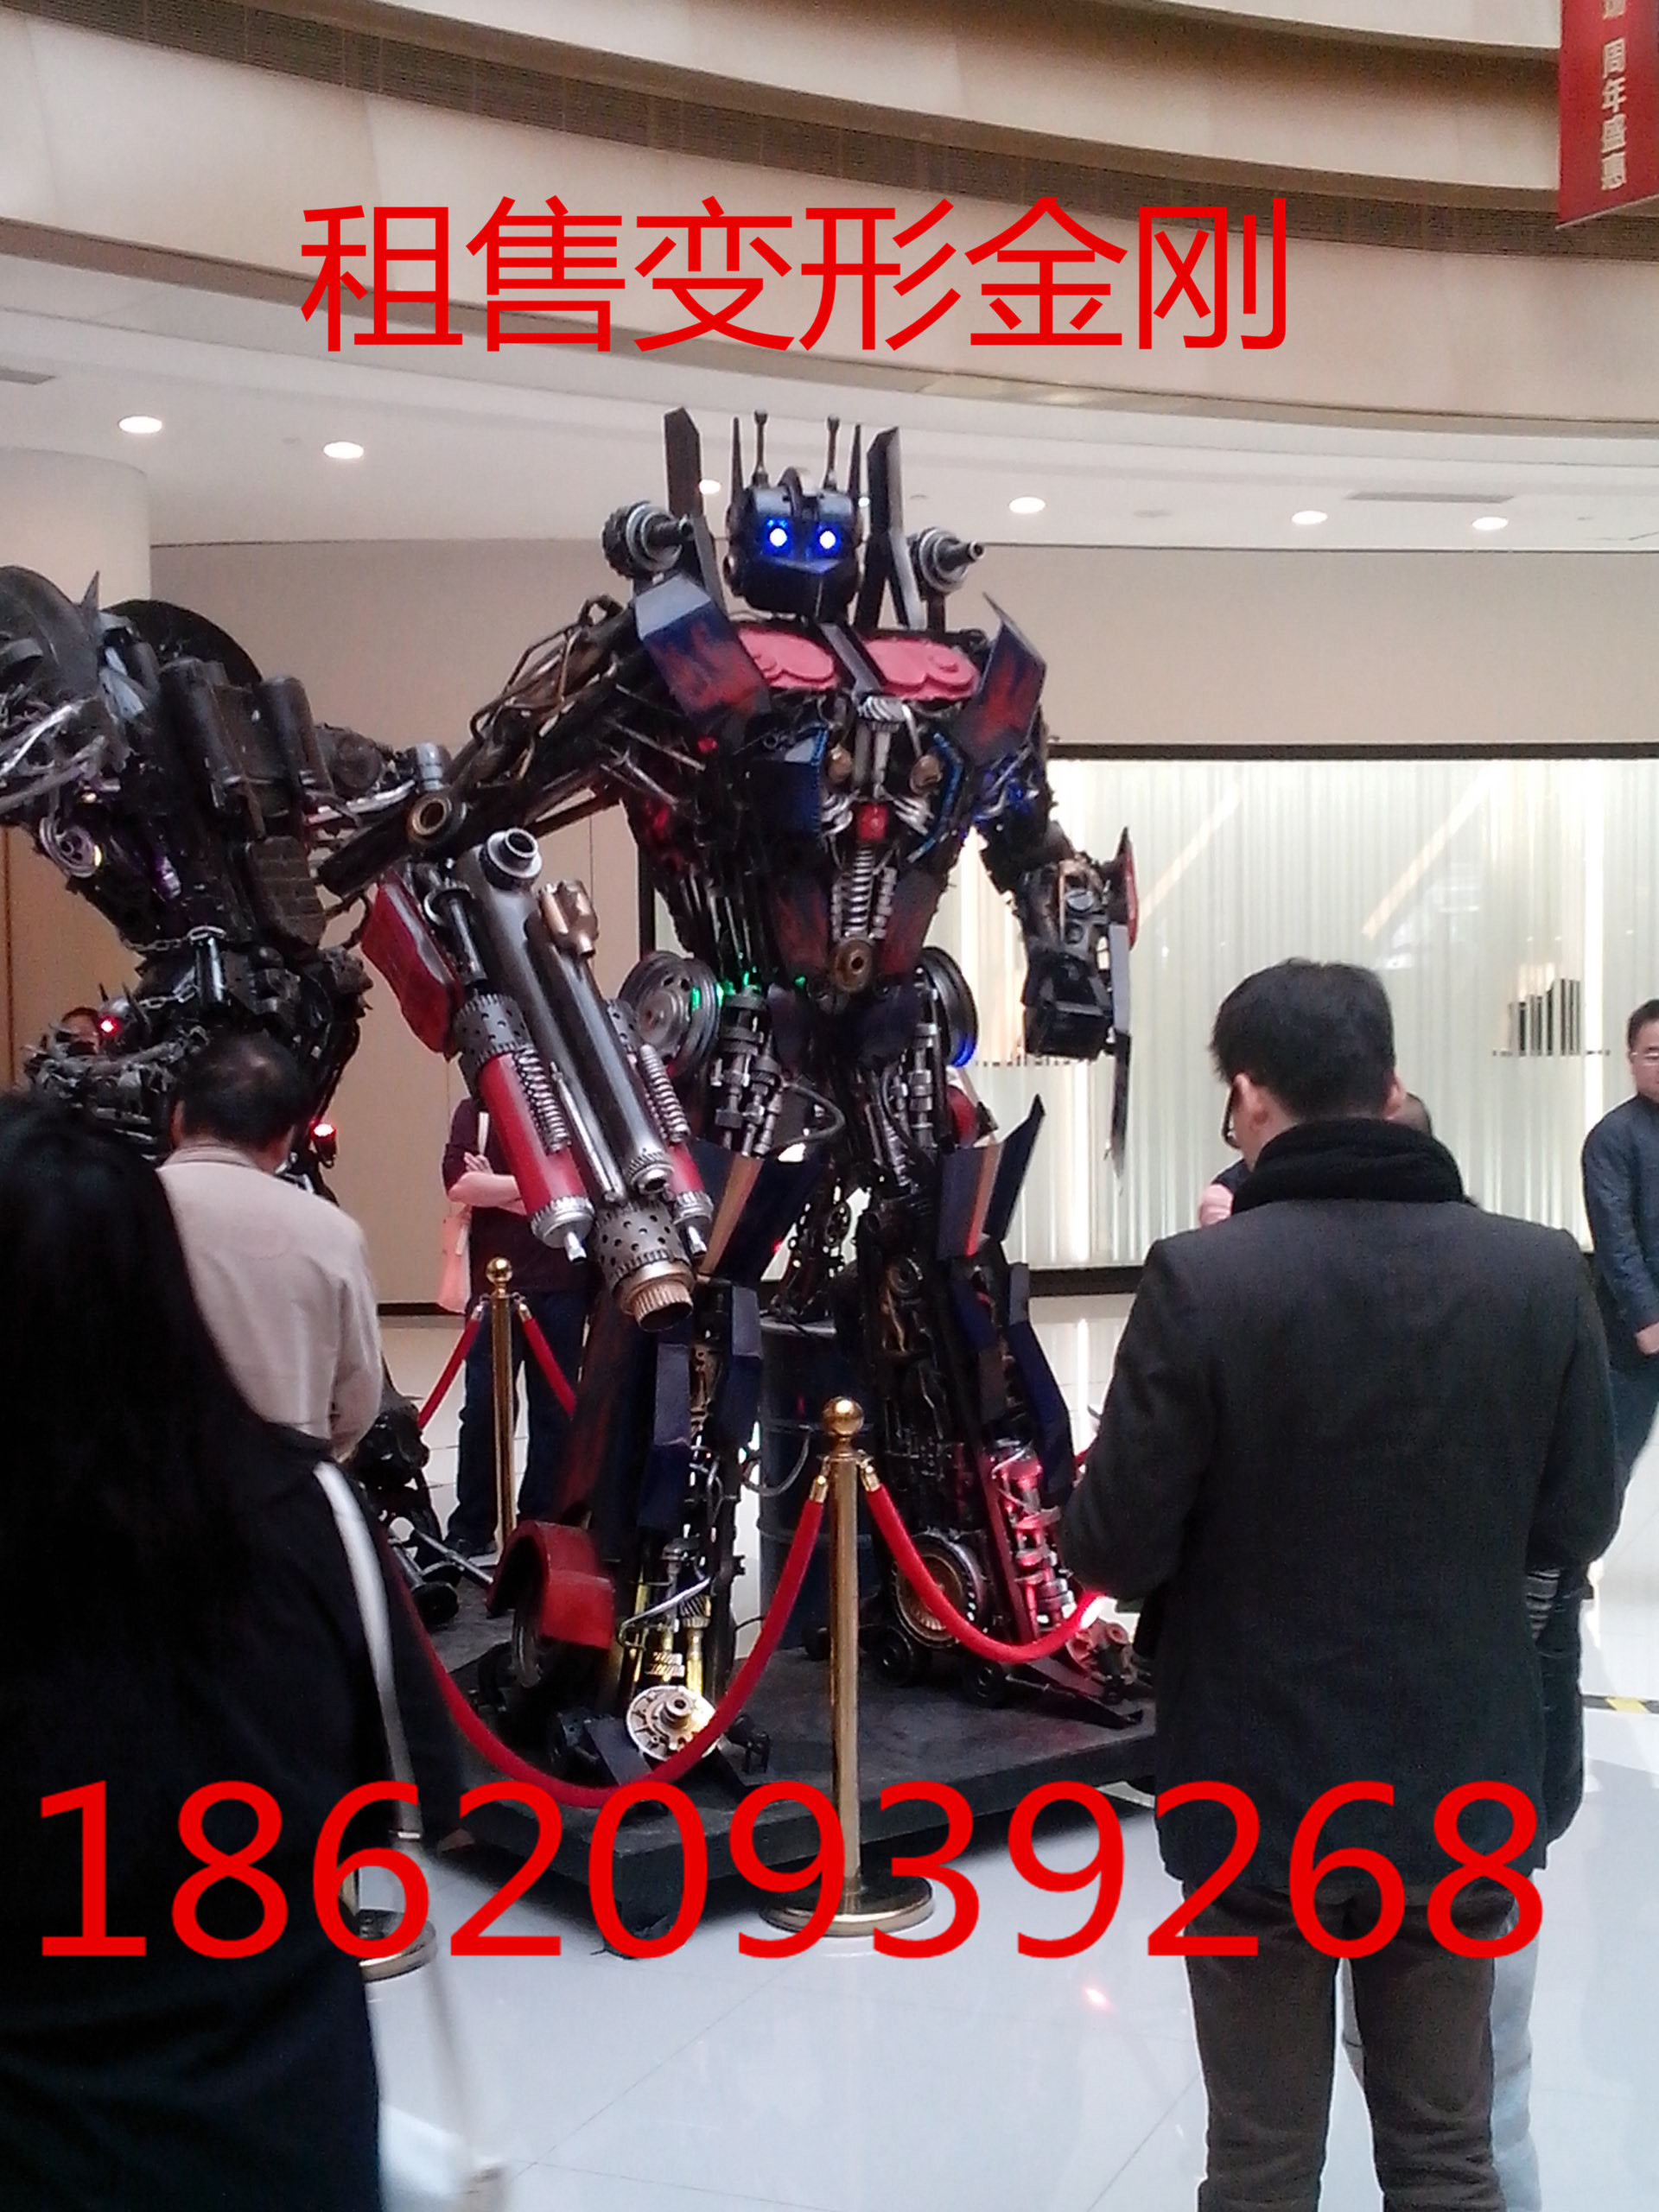 广州出租机器人 大型变形金刚模型 金属机器人模型